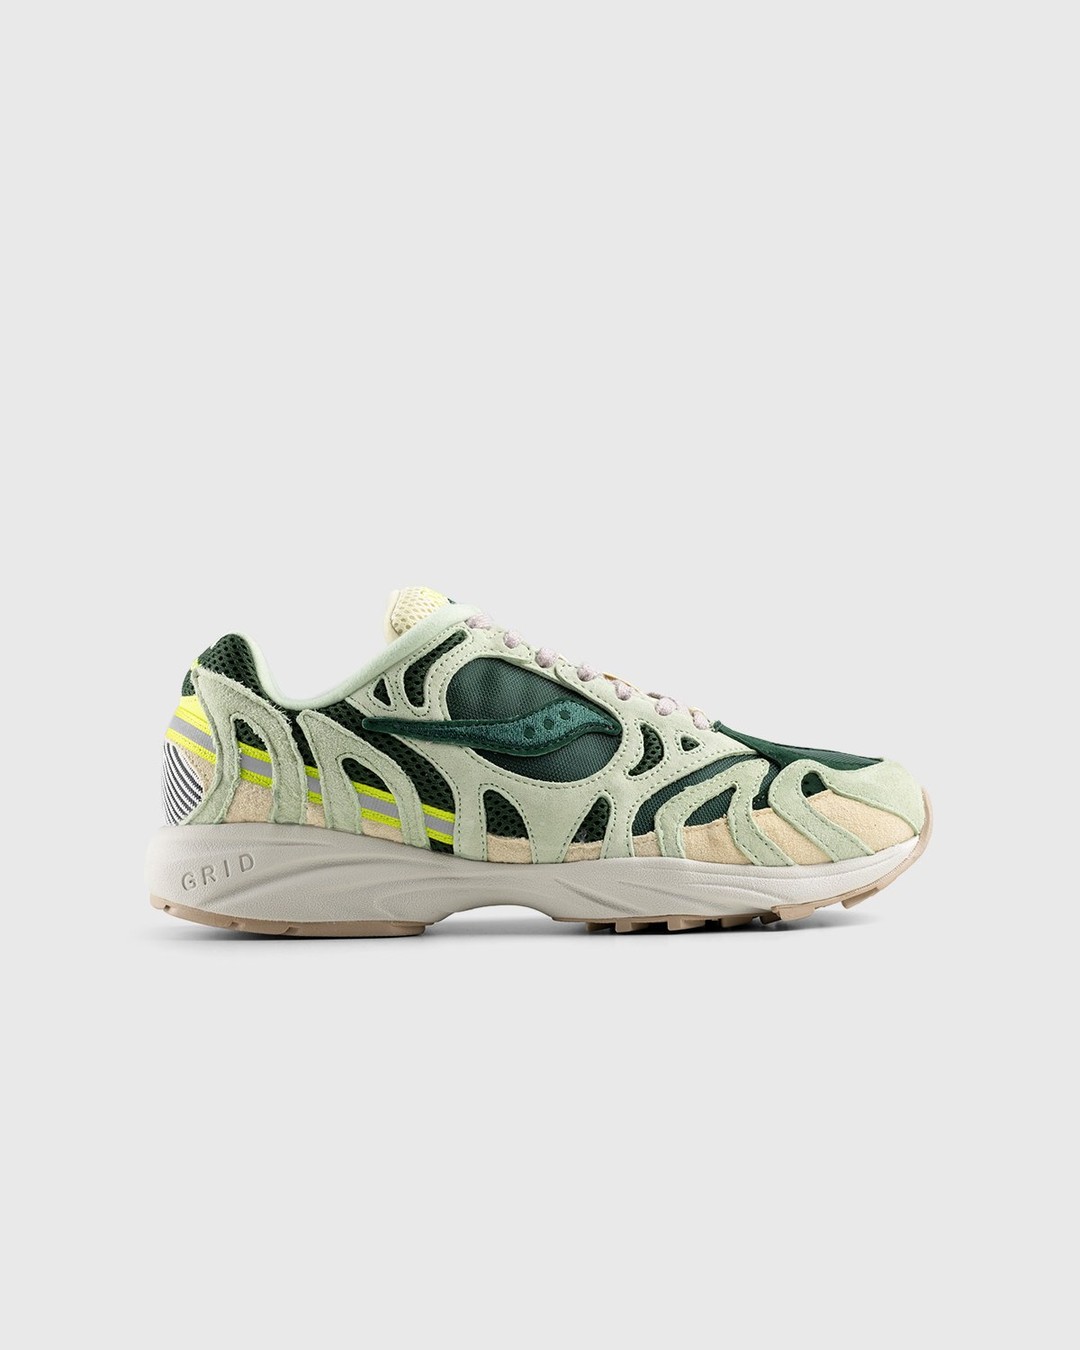 Saucony – Grid Azura 2000 Green - Low Top Sneakers - Green - Image 1